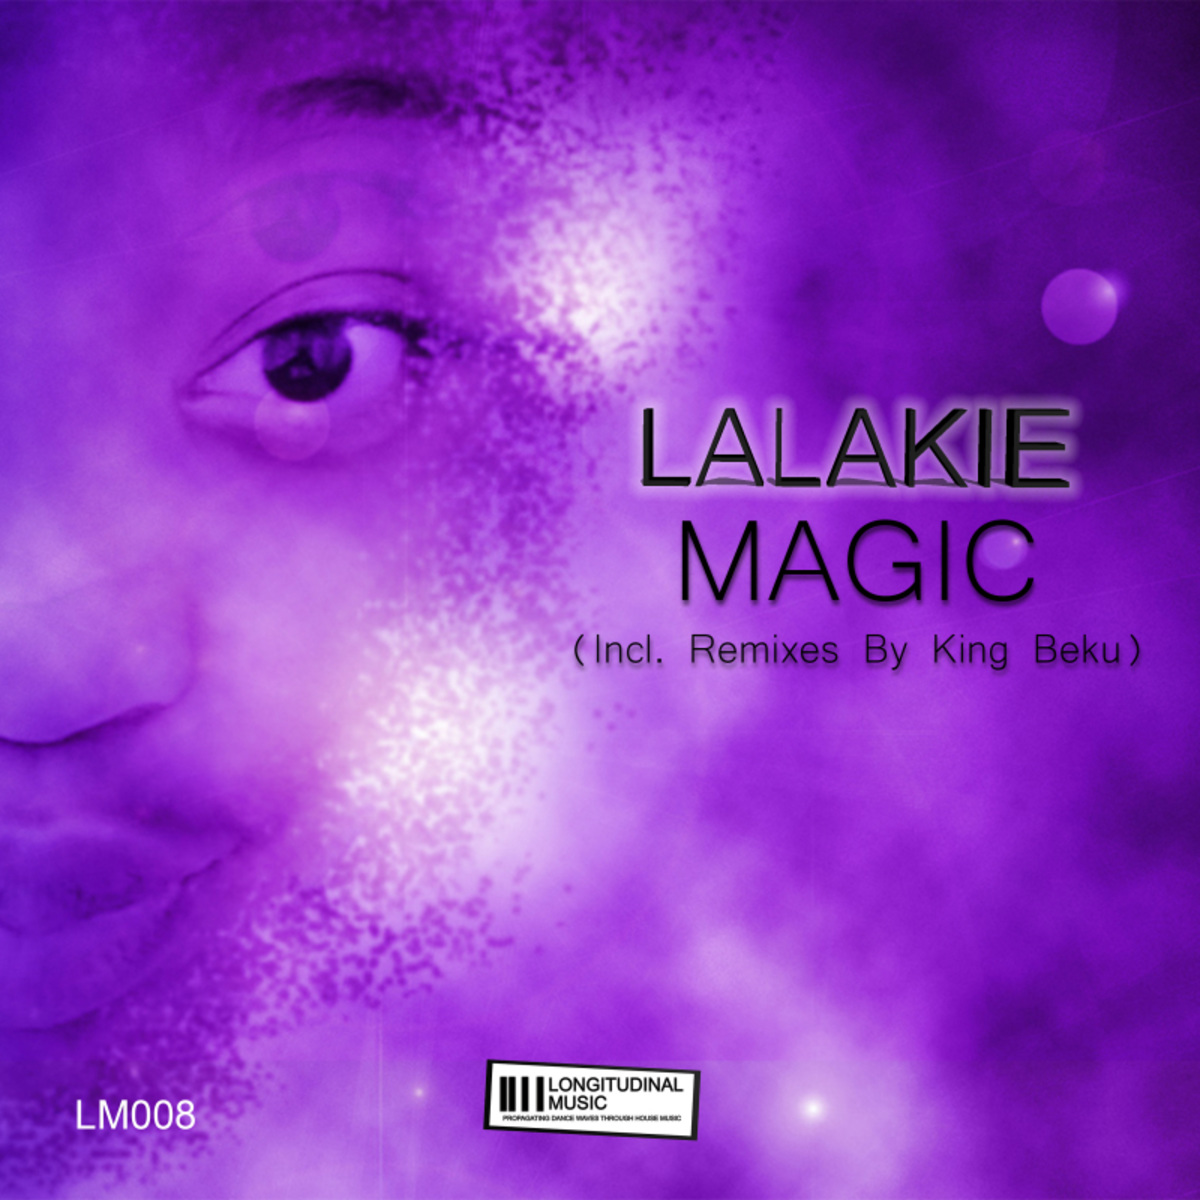 Lalakie - Magic (Incl. Remixes by King Beku) / Longitudinal Music